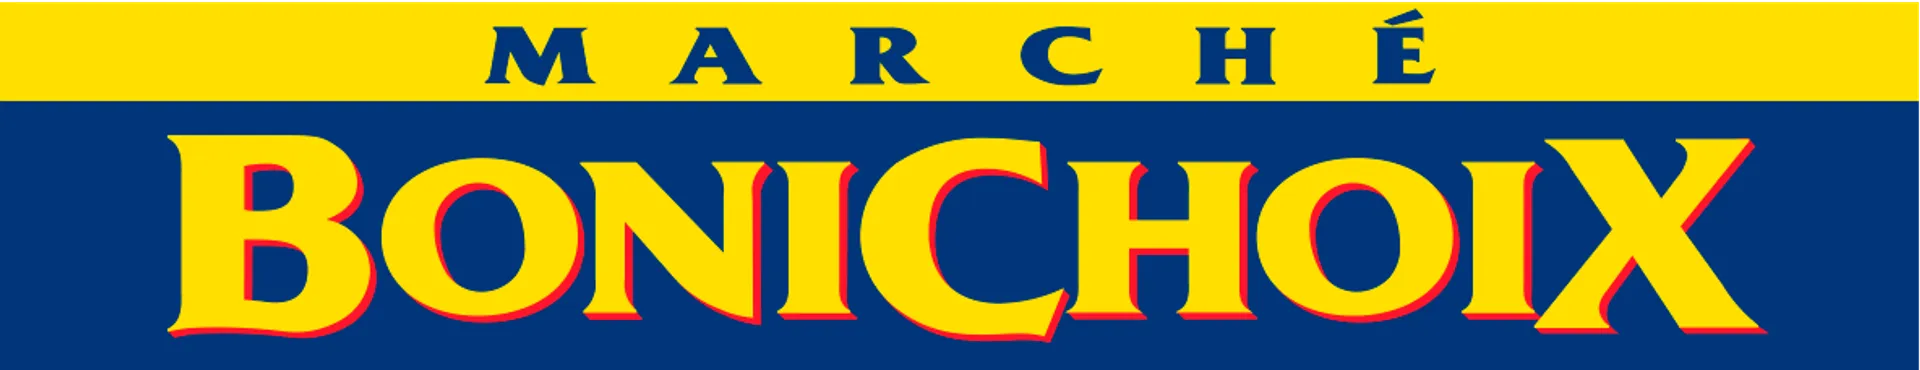 MARCHÉ BONICHOIXI logo